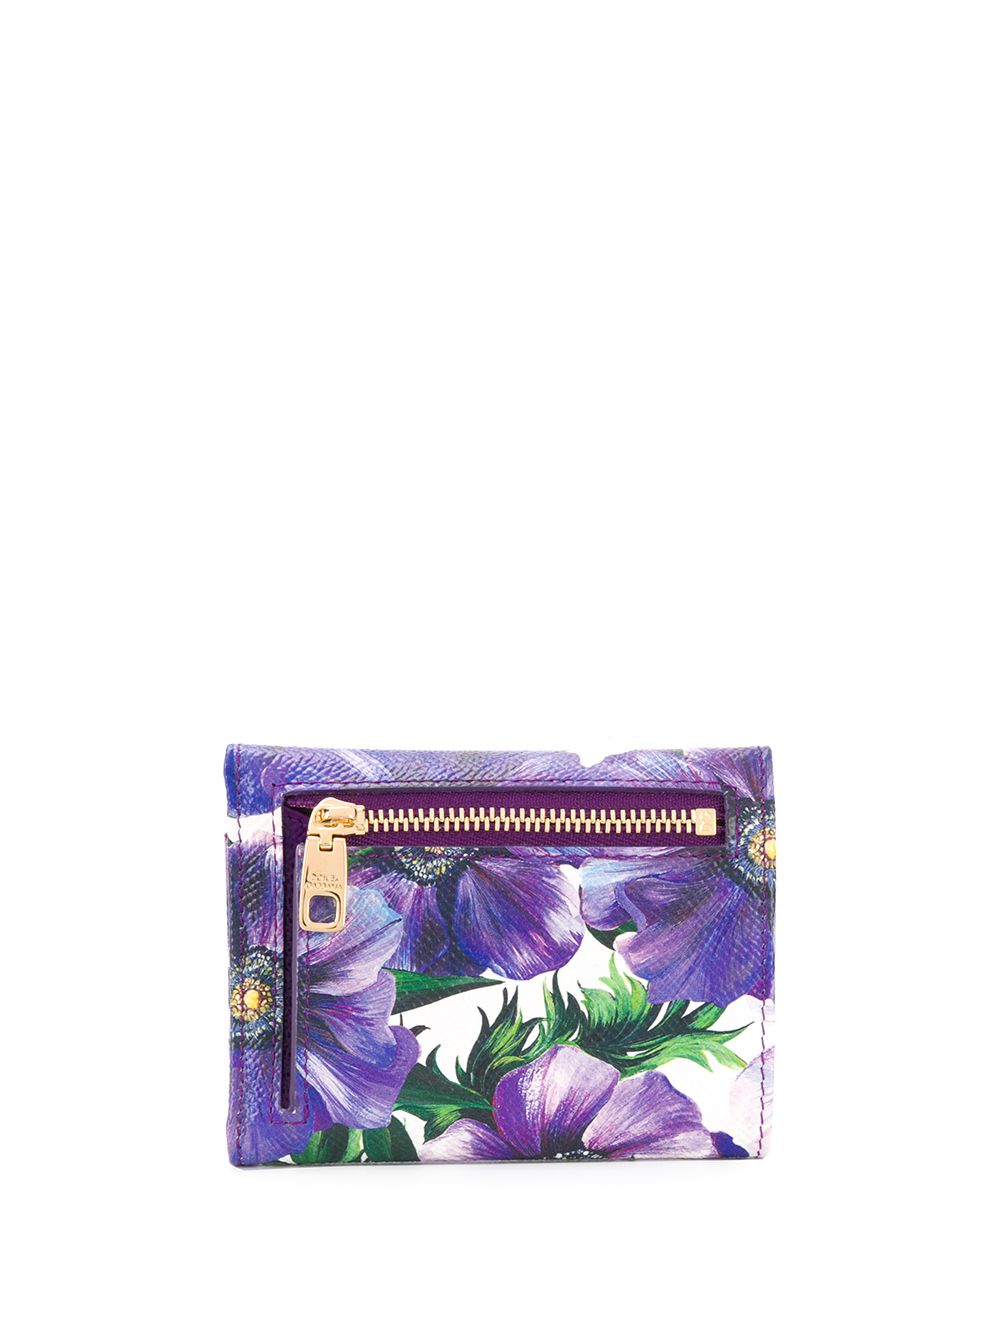 фото Dolce & gabbana кошелек с цветочным принтом